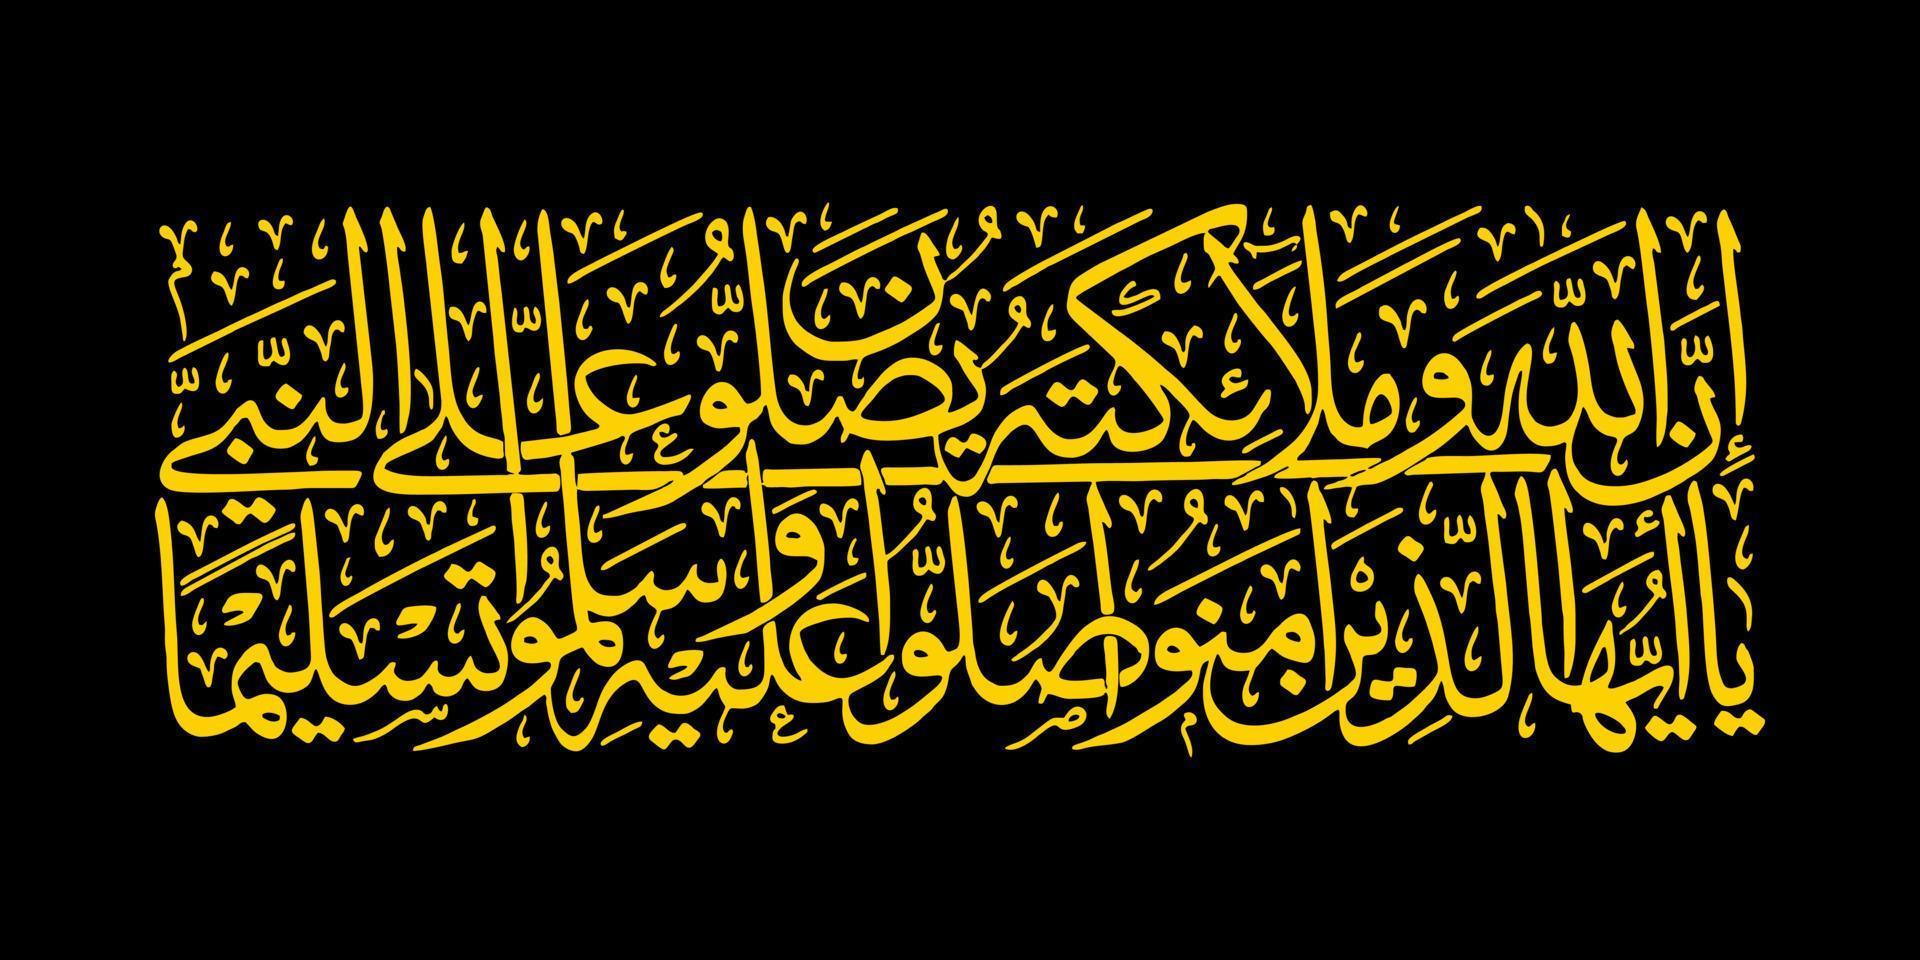 calligraphie arabe, coran surah al ahzab verset 56, traduction verily allah et ses anges prient pour le prophète. o vous qui croyez vous salawat pour le prophète et le saluez avec un plein respect vecteur